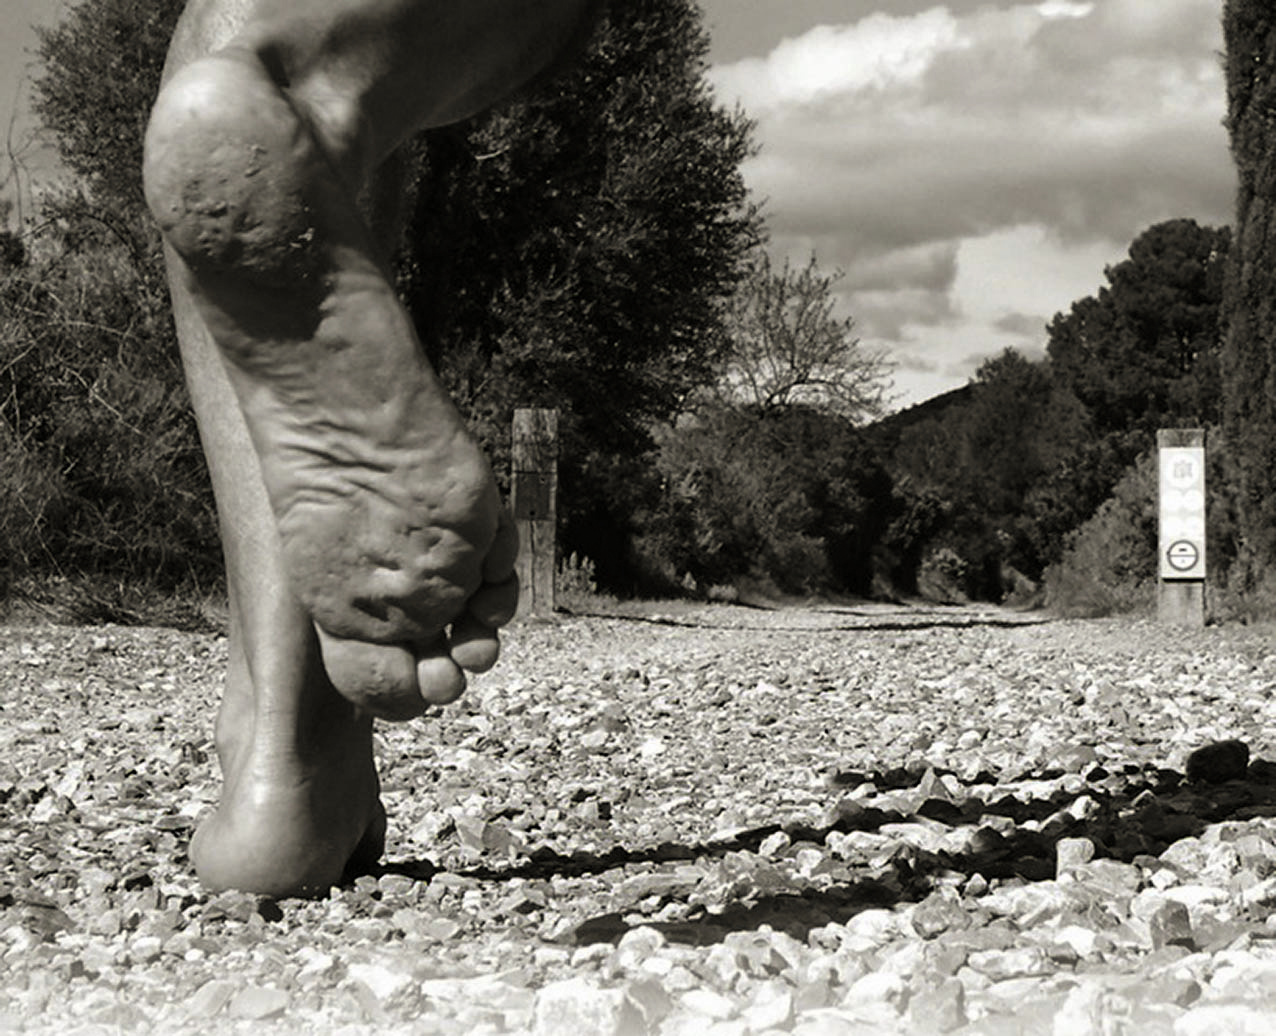 Imagen de portada del libro "La aventura de correr descalzo".